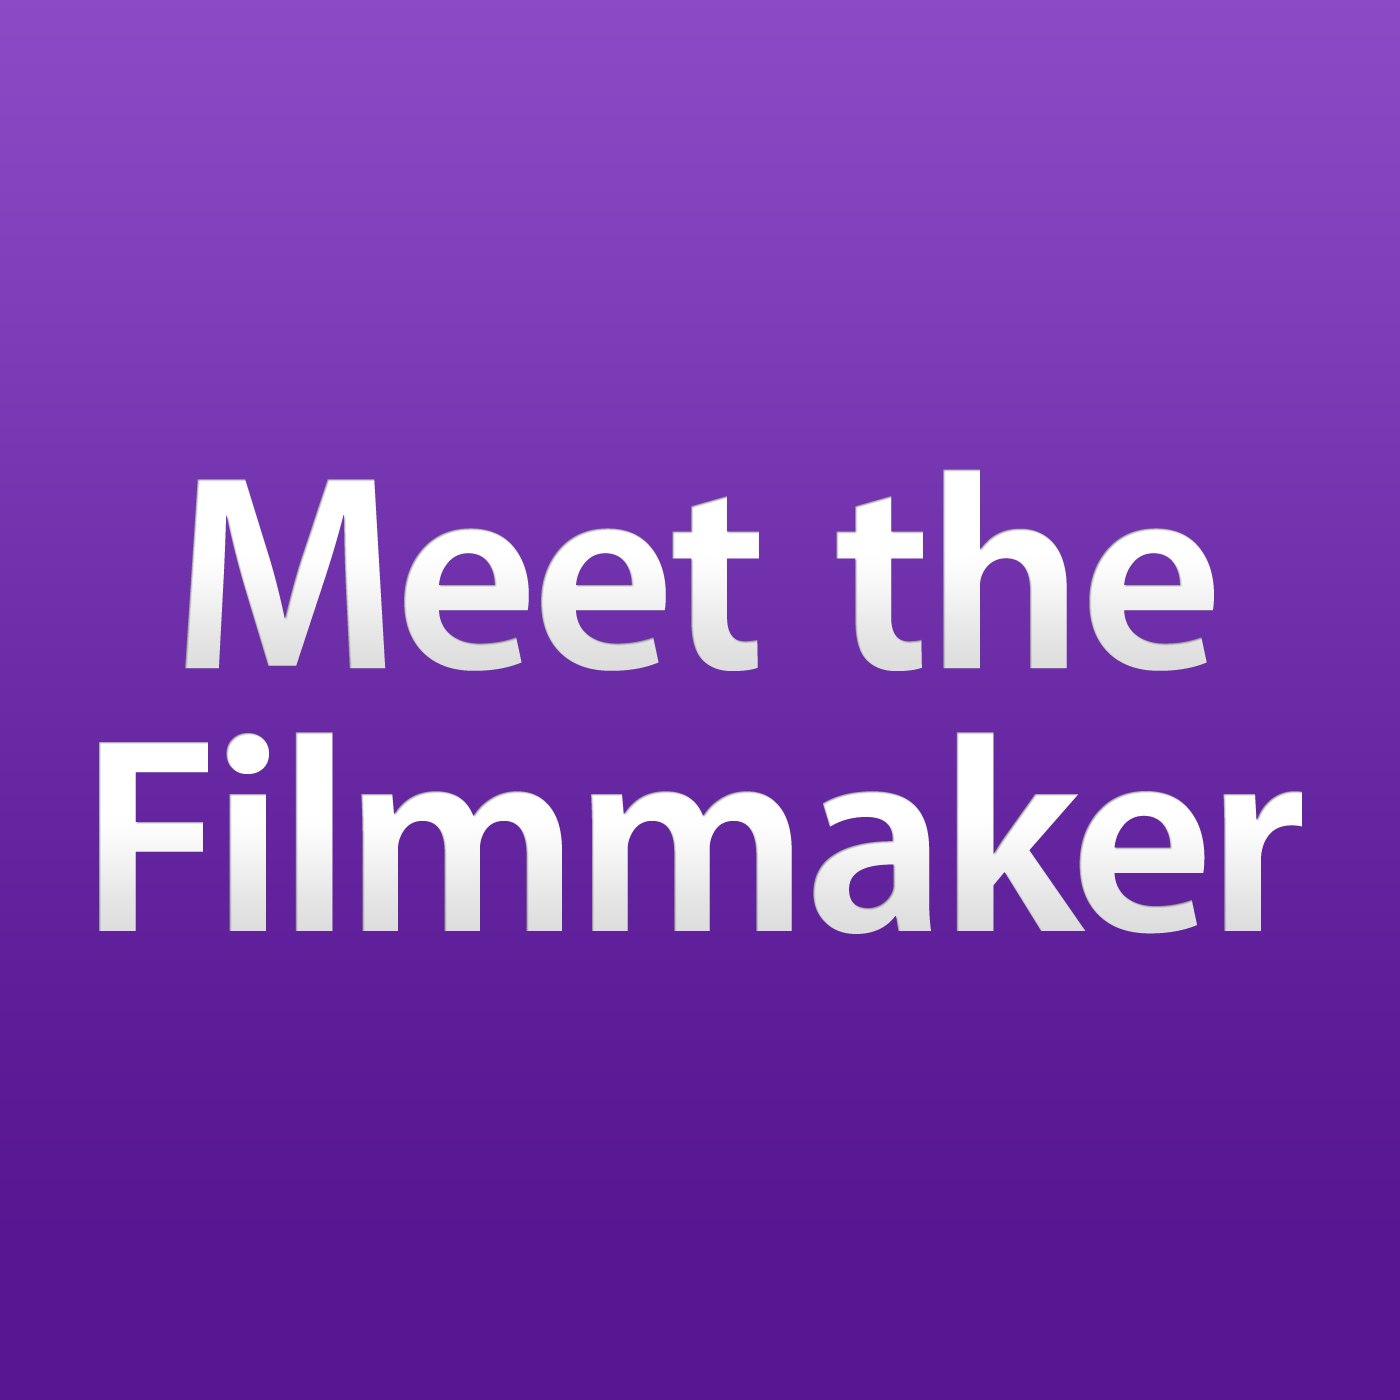 Meet the Filmmaker